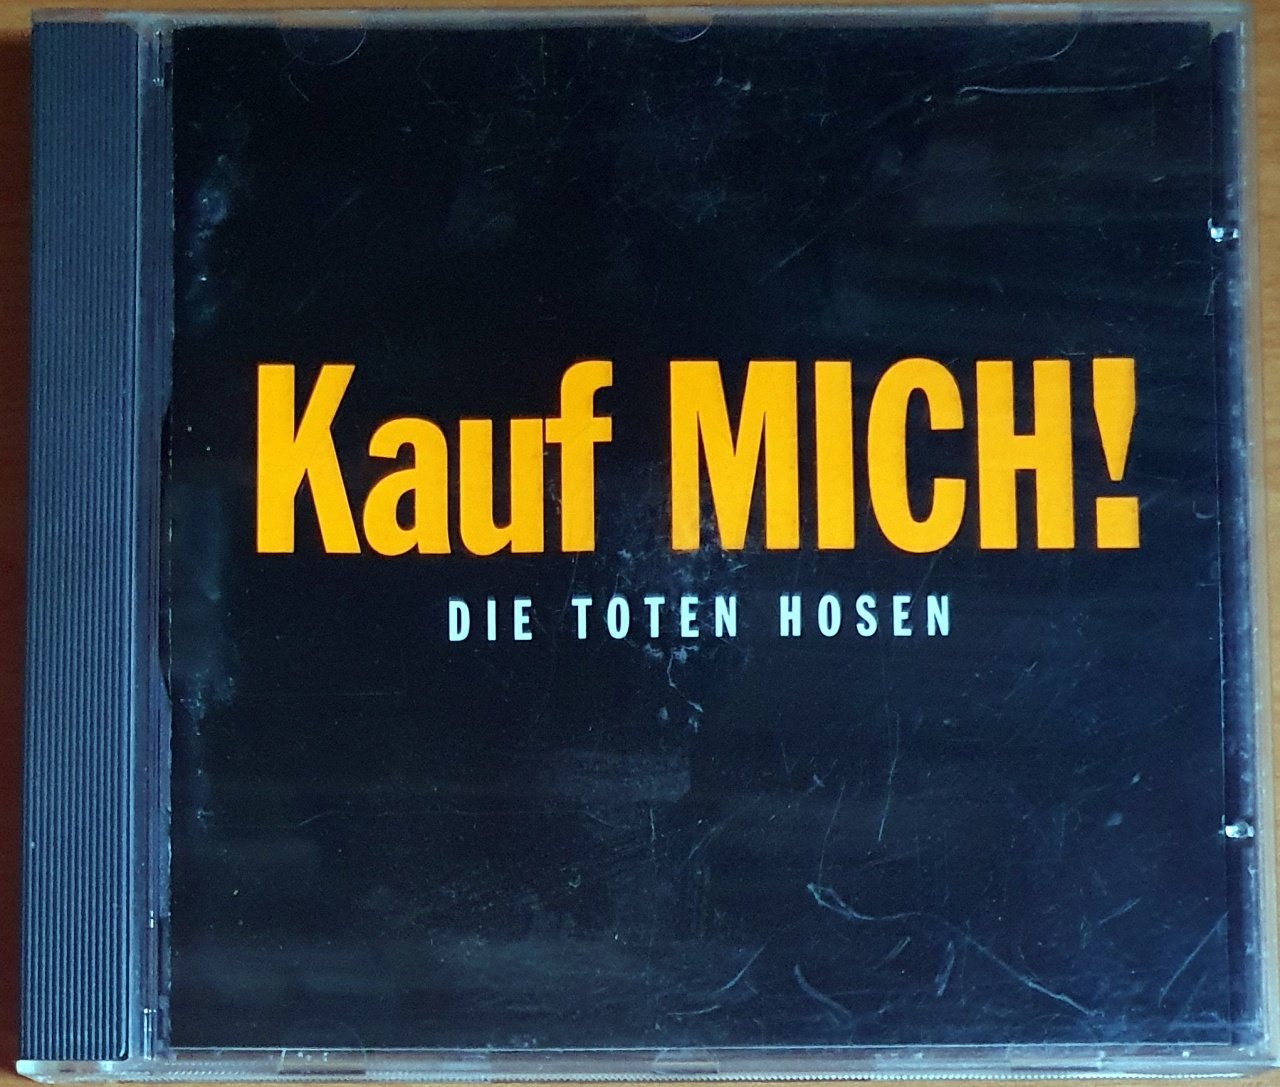 DIE TOTEN HOSEN - KAUF MICH (1993) - CD 2.EL